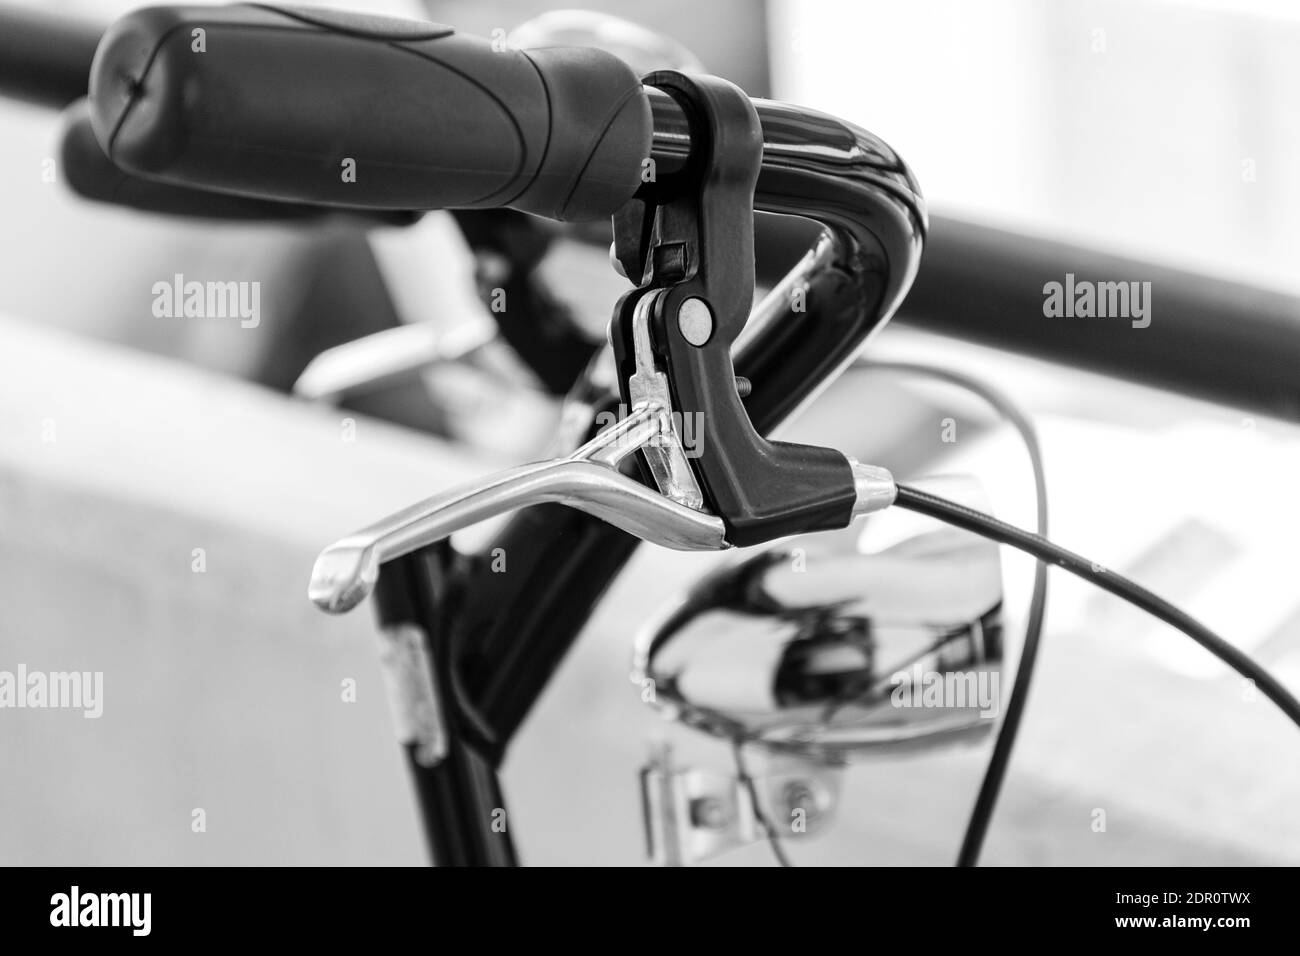 Prise de vue en niveaux de gris du guidon de vélo Banque D'Images